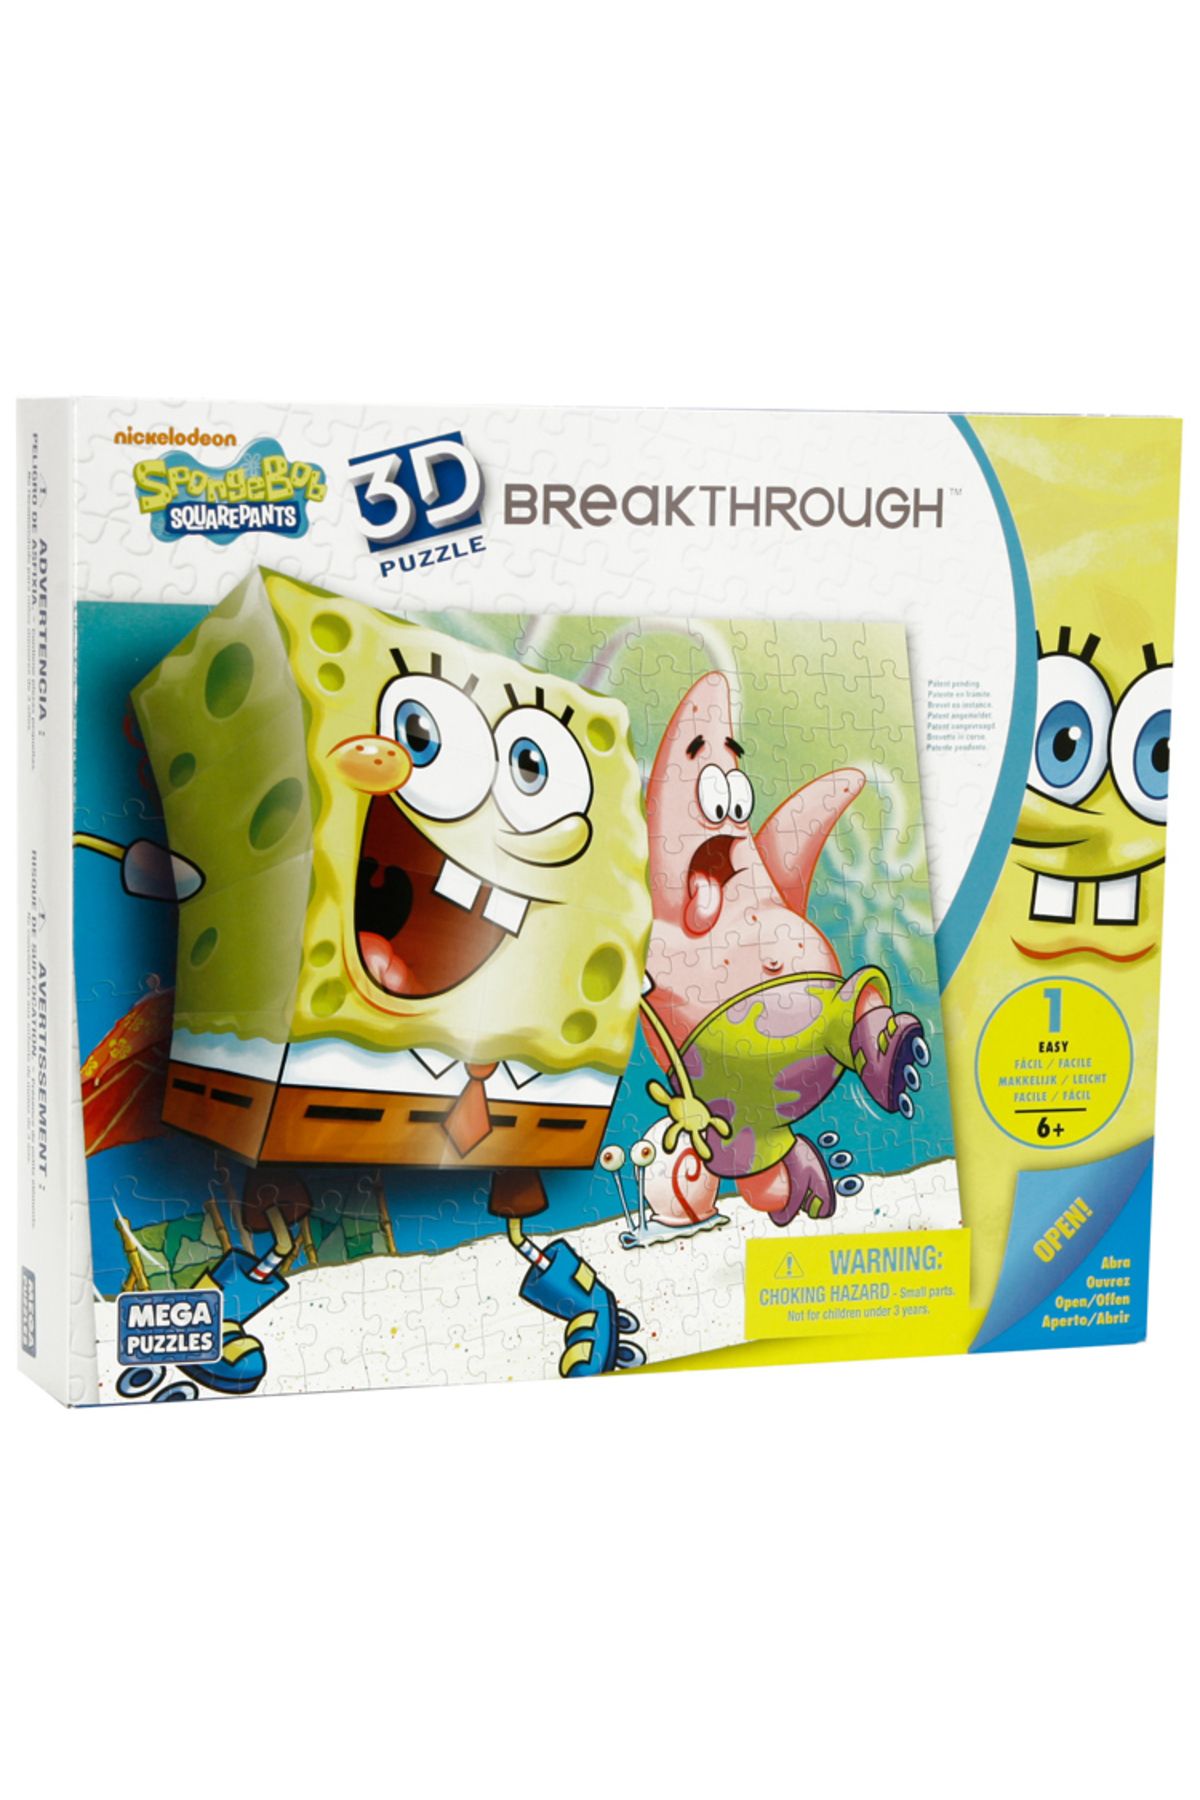 Mega Puzzles 110 Parça 3d Breakthrough Puzzle Sponge Bob 50707